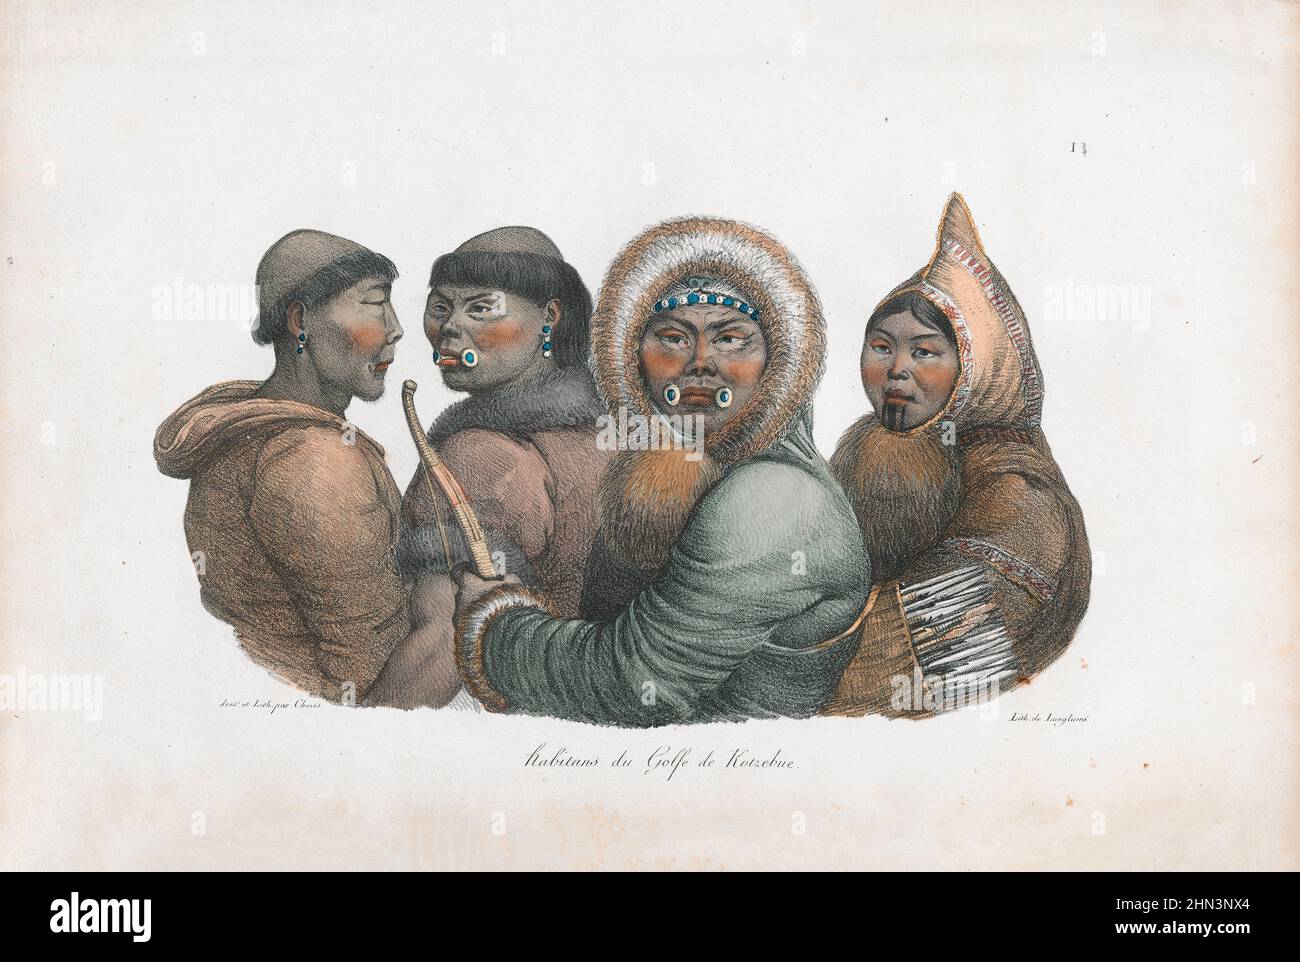 Illustrazione di colore vintage degli abitanti del Kotzebue Sound. 1822, di Louis Choris. Kotzebue Sound è un braccio del mare di Chukchi nel reg occidentale Foto Stock